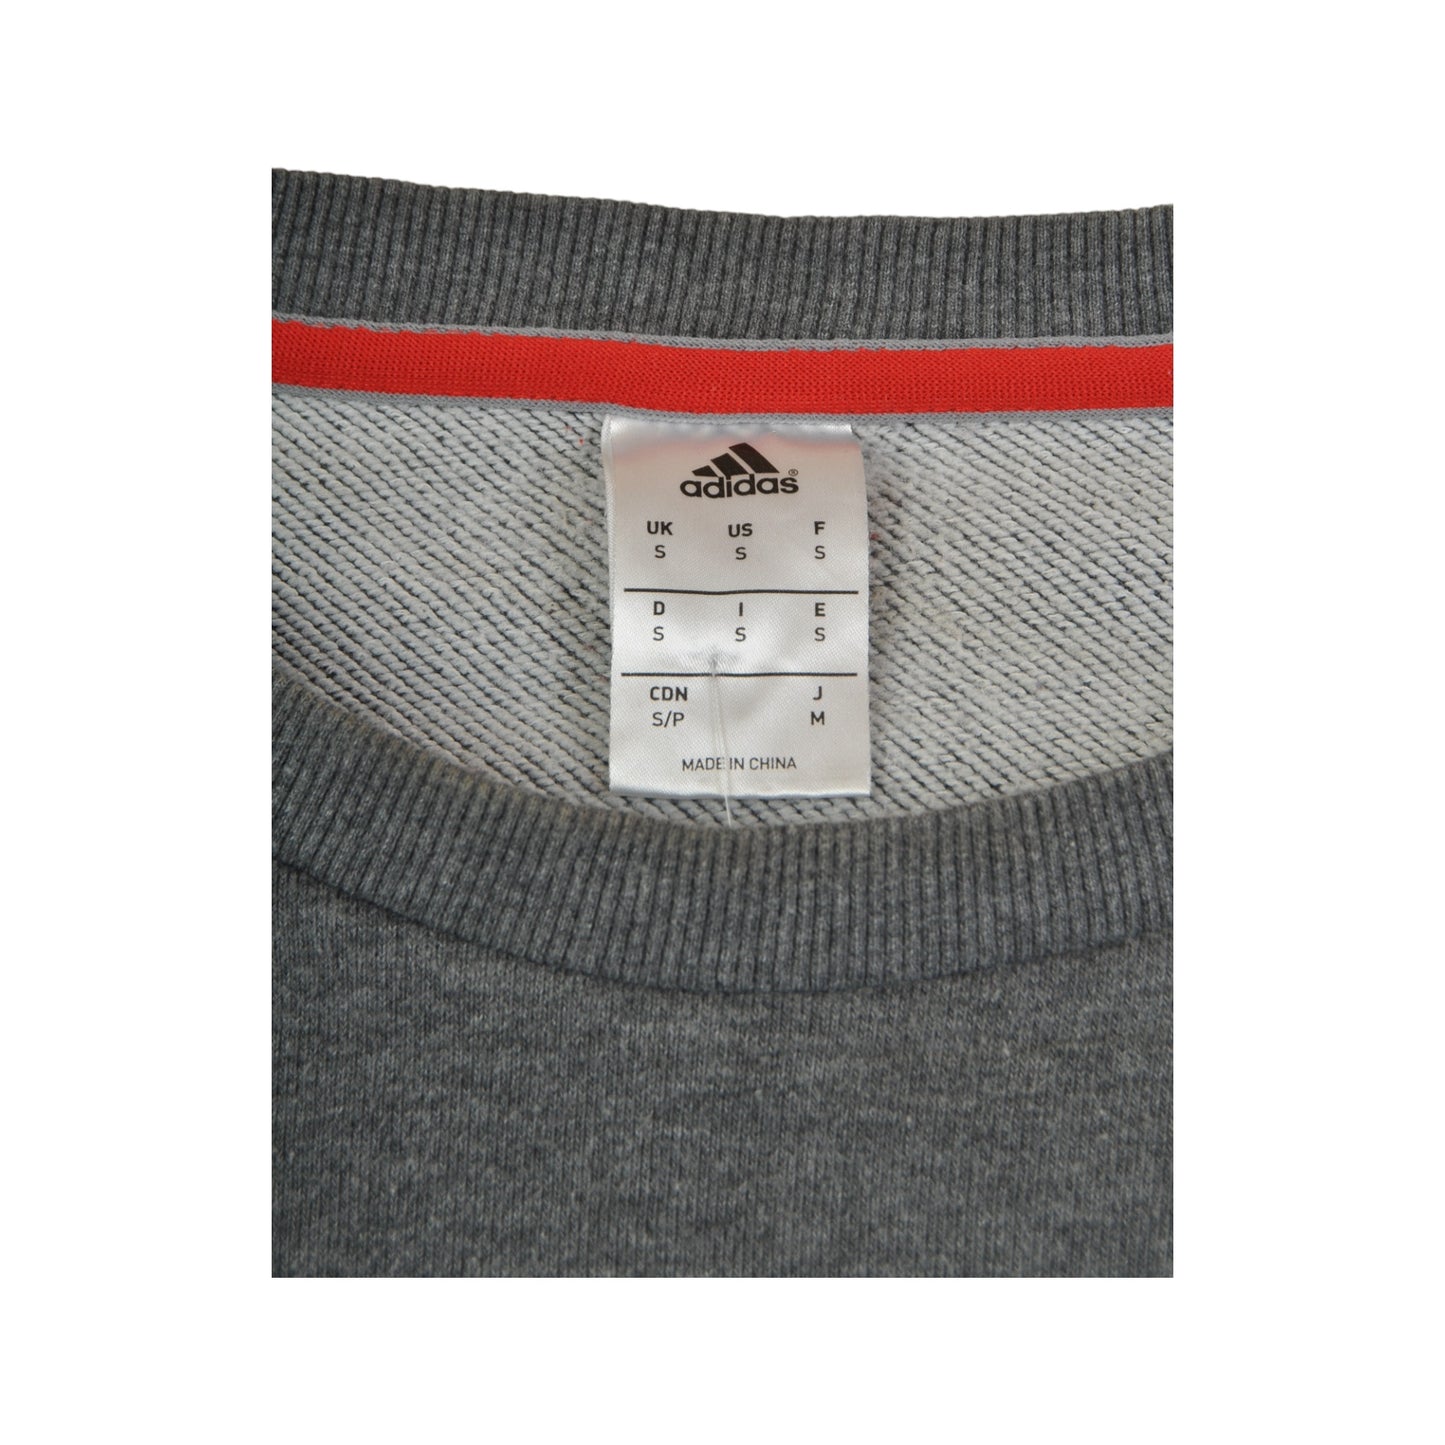 Vintage Adidas Crewneck Sweatshirt Grey Small